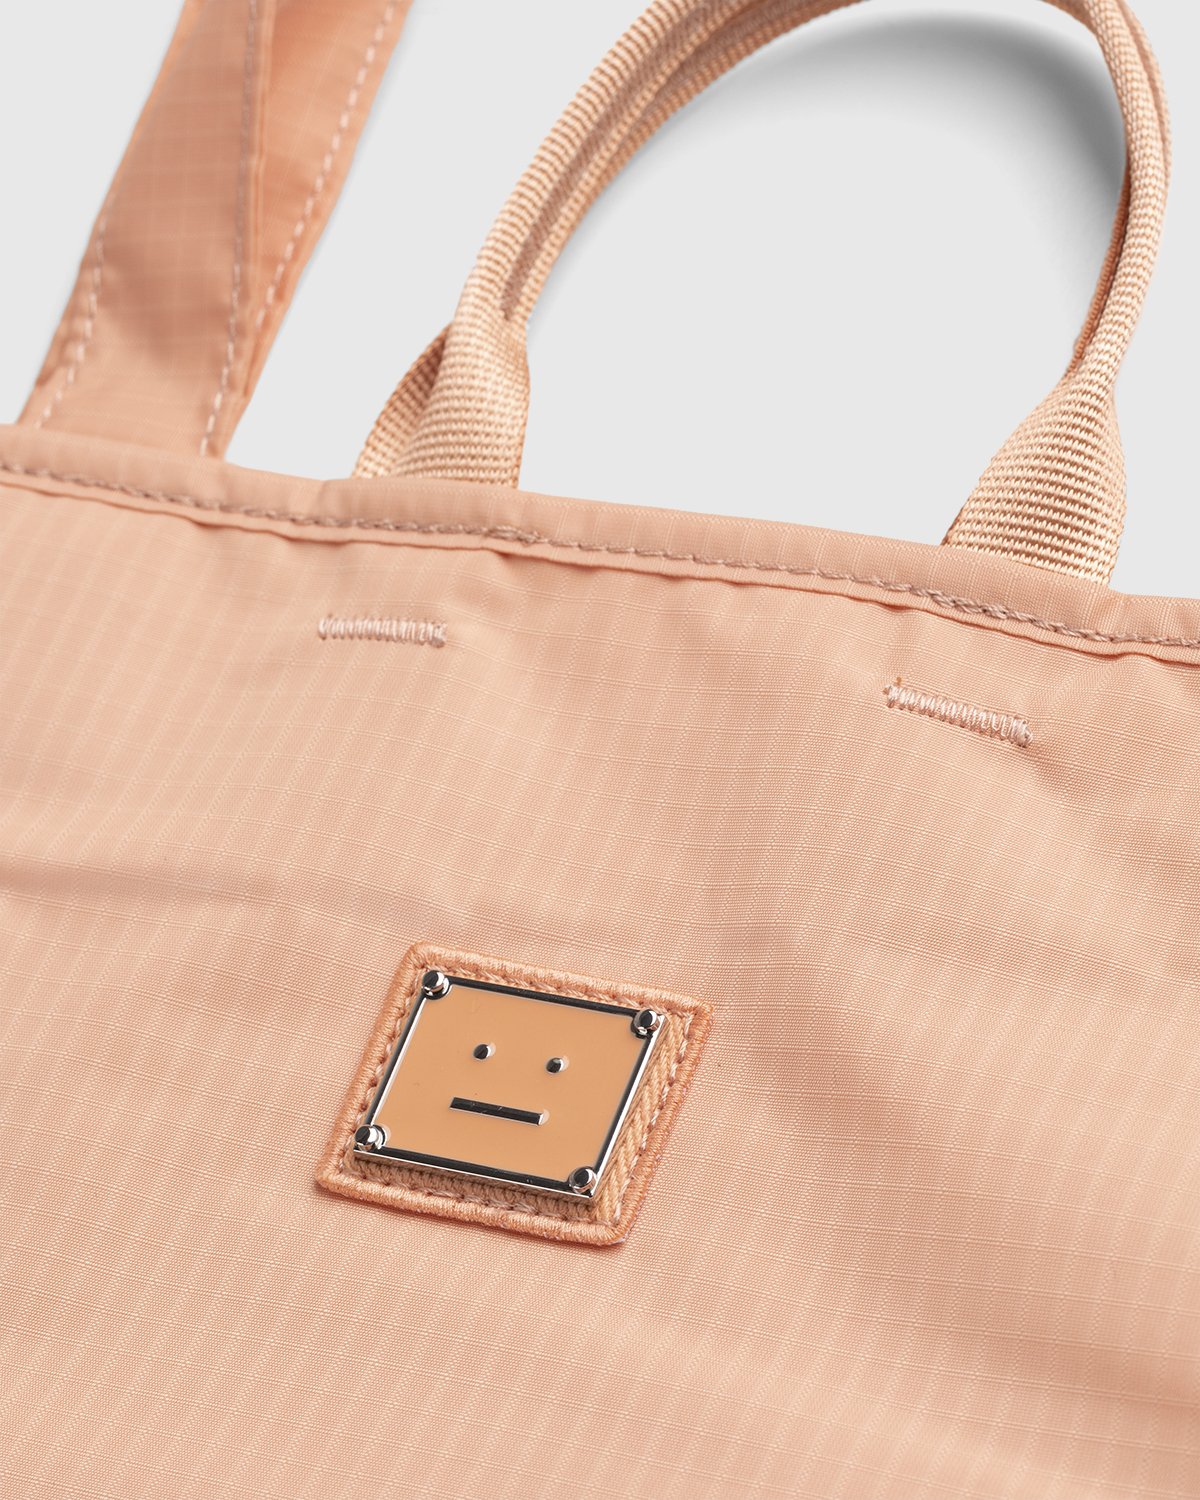 Acne Studios - Shoulder Tote Bag Peach Orange - Accessories - Orange - Image 3